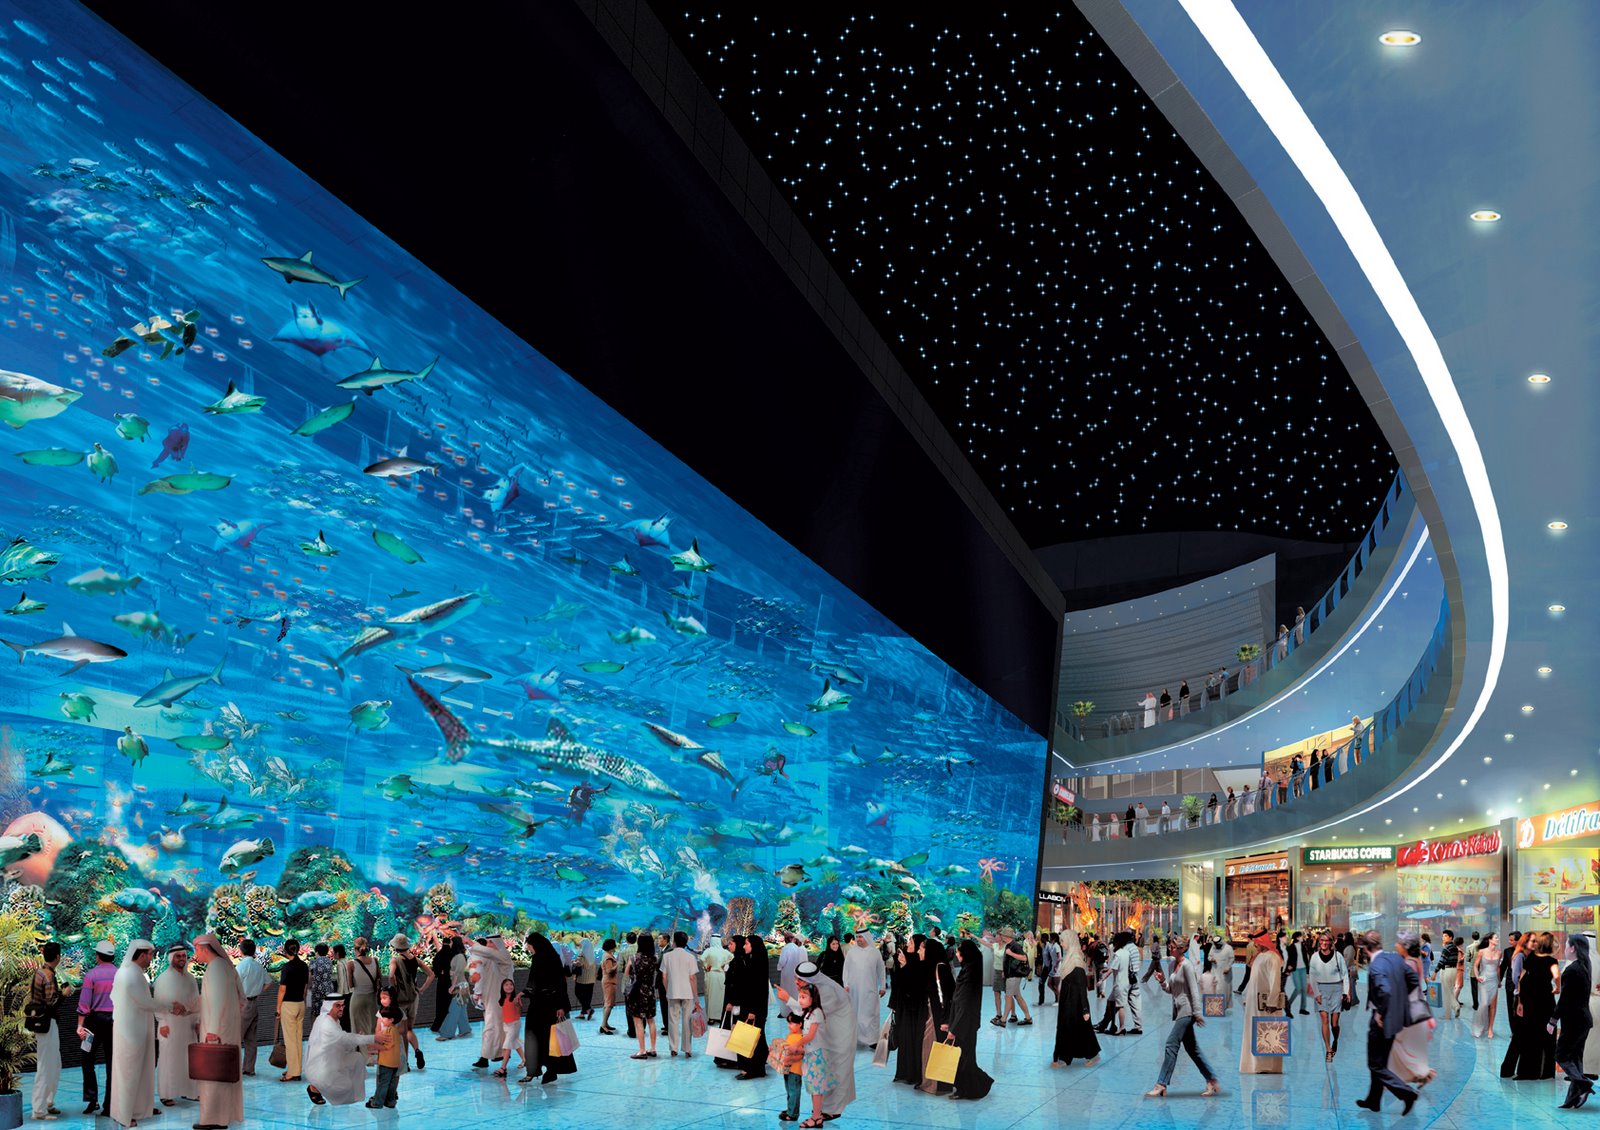 5 largest aquarium in the world | ubah-ubah